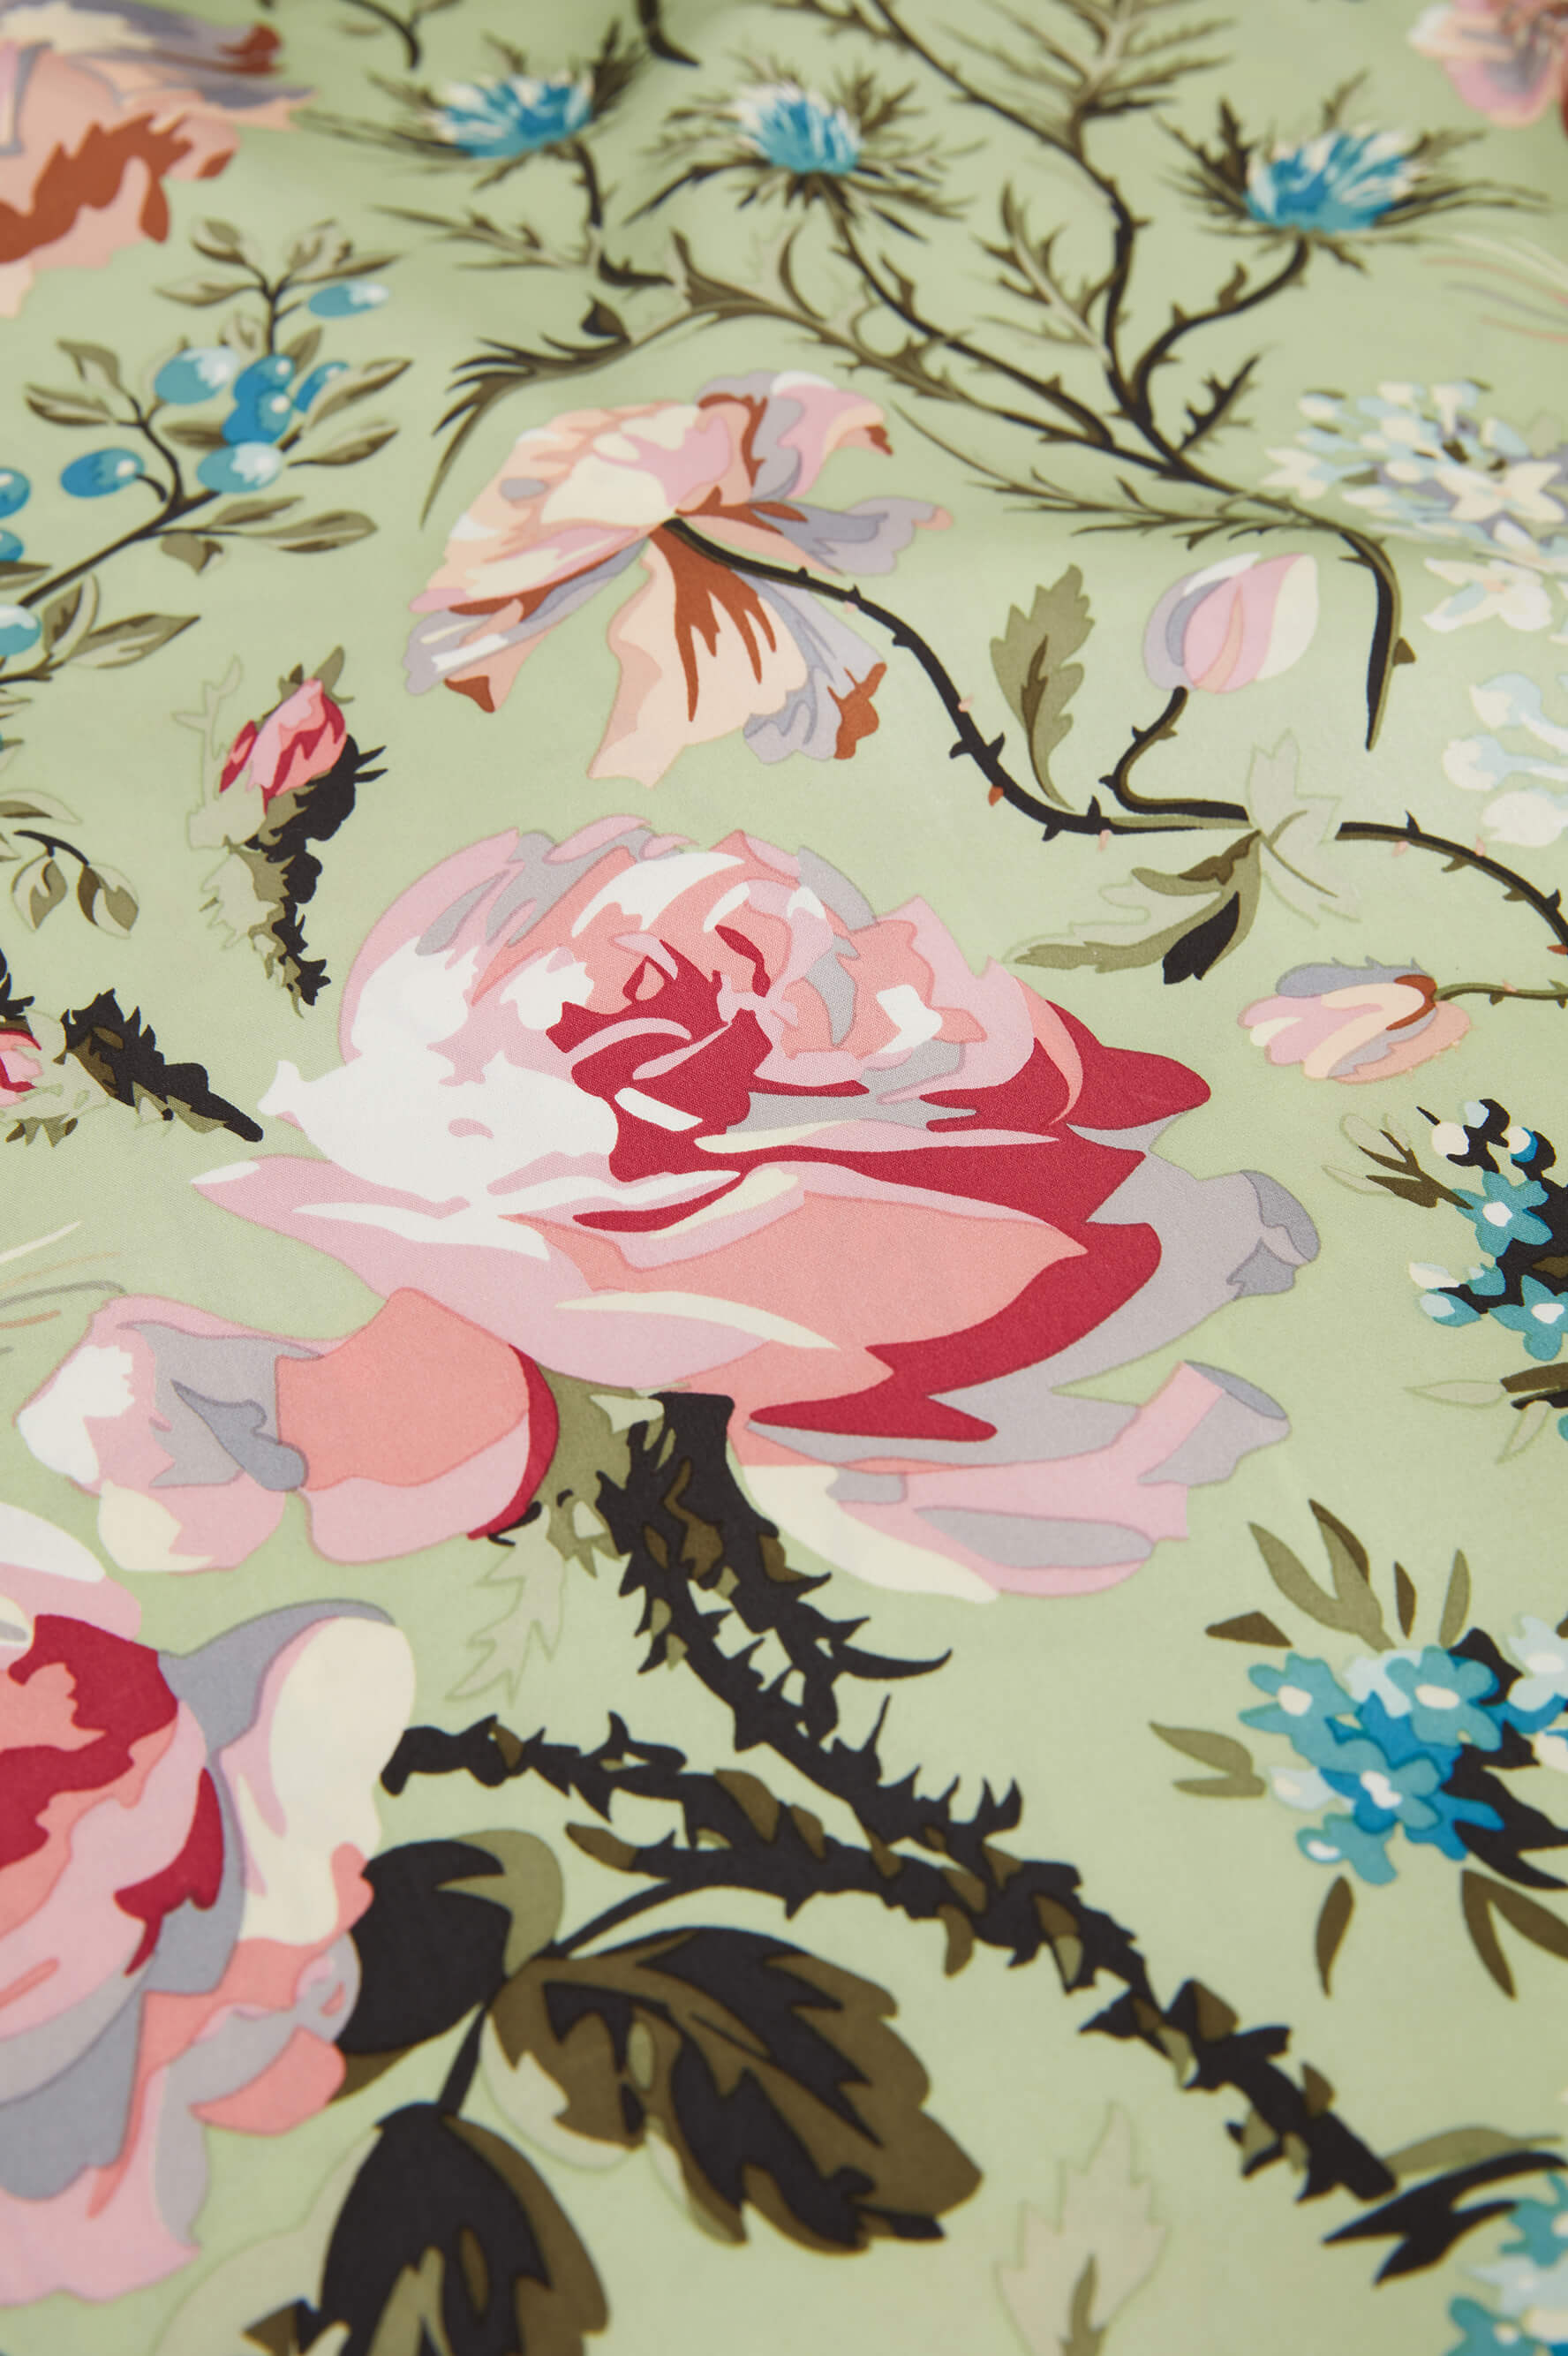 Mimi Effie Green Floral Silk Satin Robe